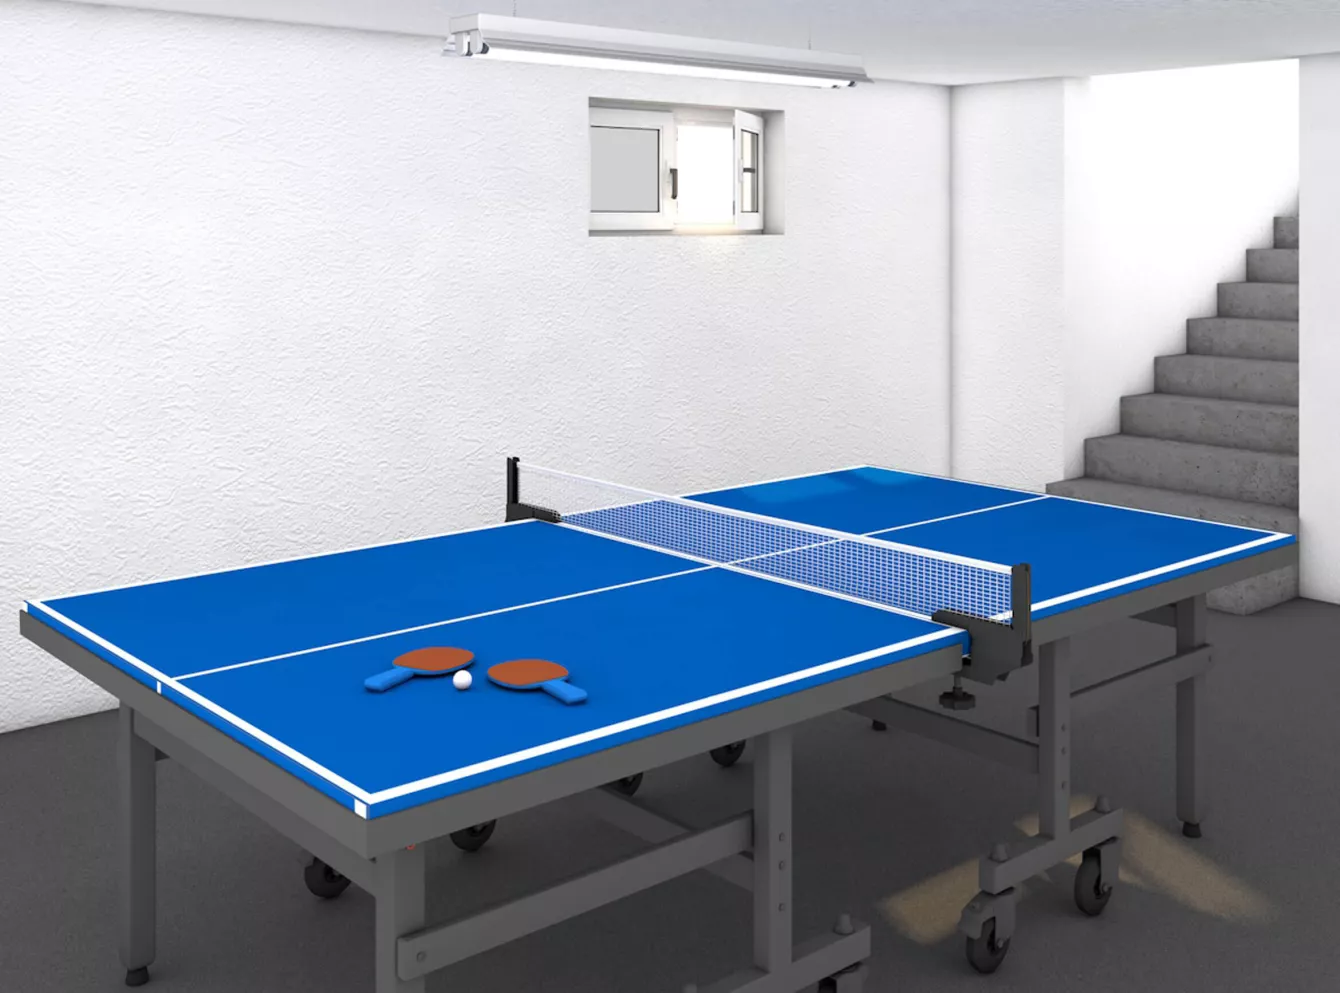 Blauer Ping-Pong Tisch in einem Keller